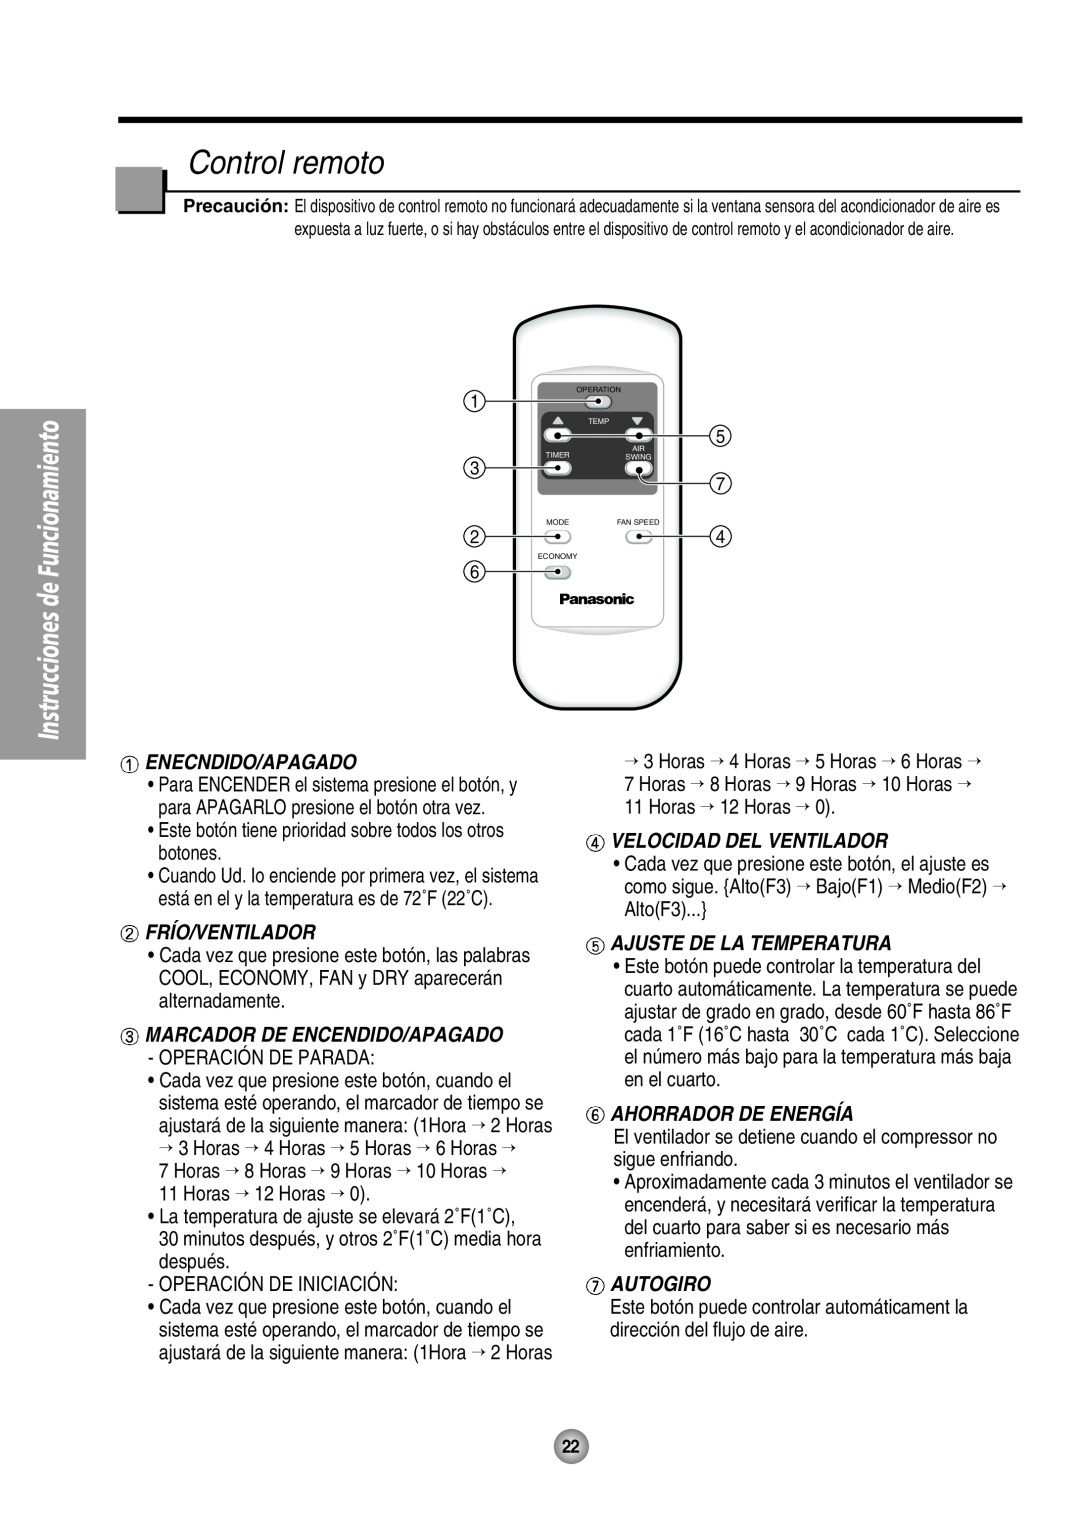 Panasonic CW-XC105HU Control remoto, Ahorrador De Energía, Enecndido/Apagado, Frío/Ventilador, Velocidad Del Ventilador 